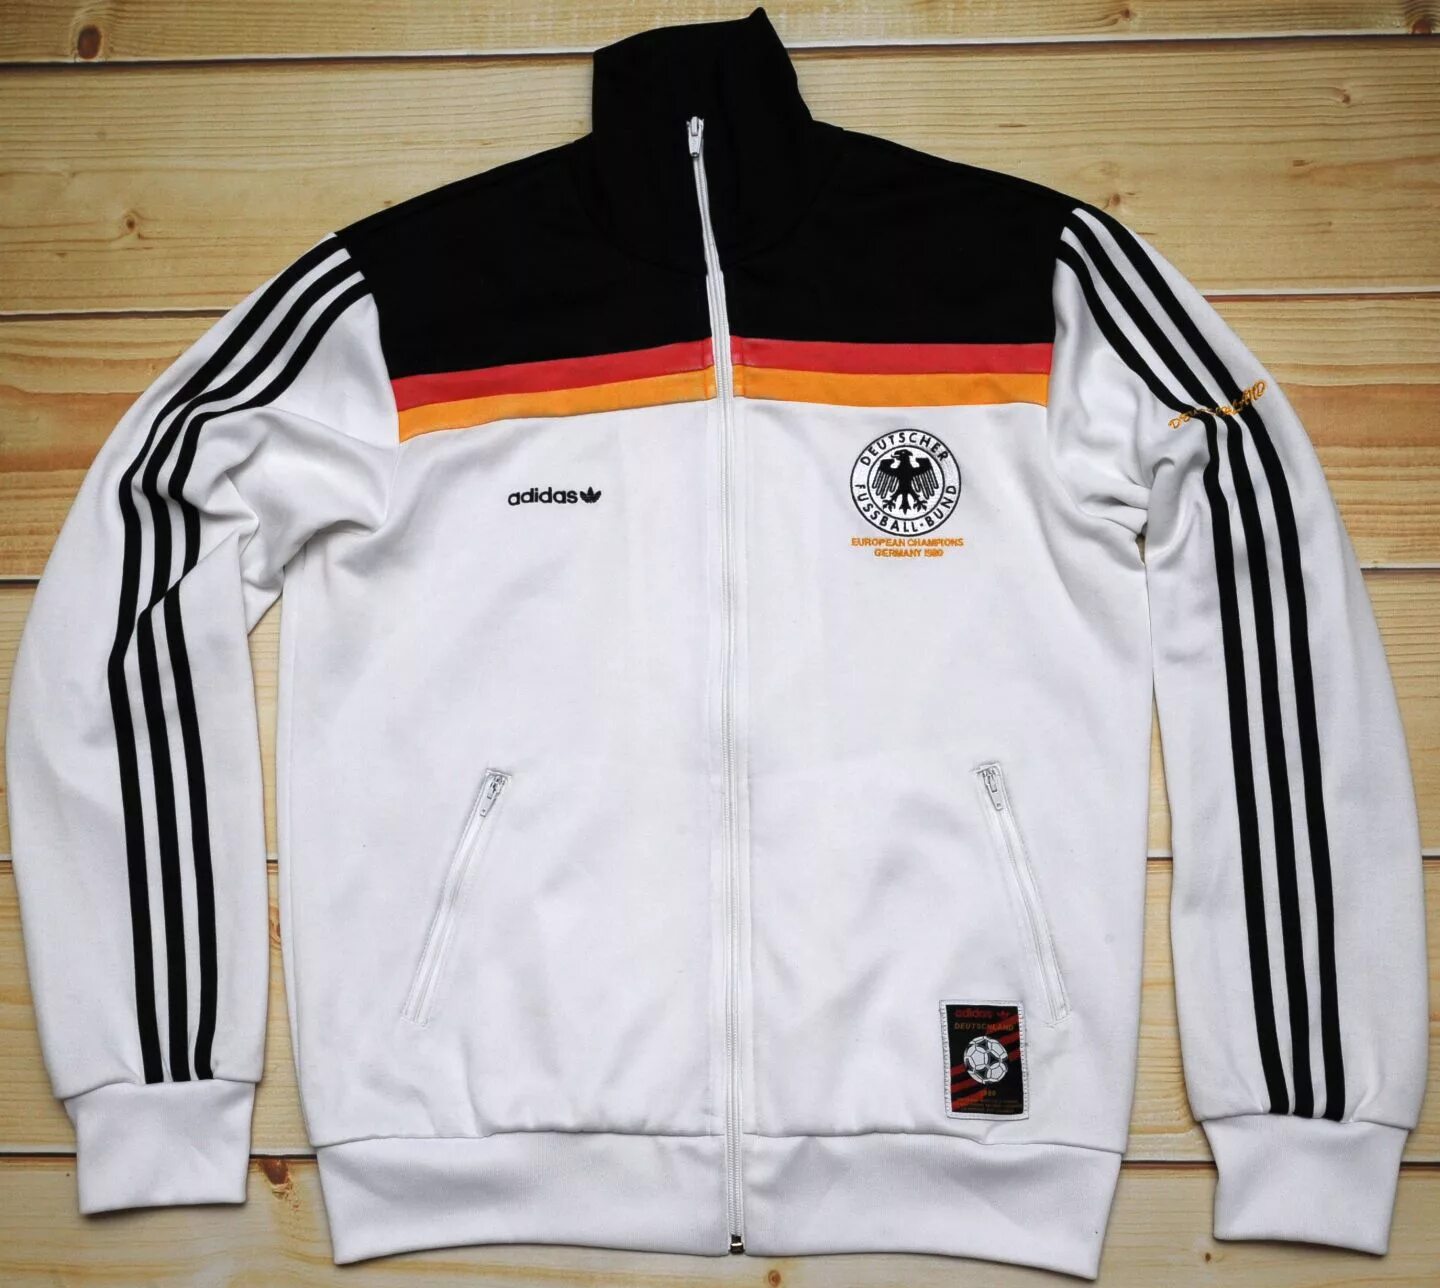 Спортивный костюм из германии. Олимпийка адидас deutscher Fussball Bund. Adidas DFB 1980 олимпийка. Олимпийка adidas Euro 2006 Germany. Олимпийка адидас Germany.